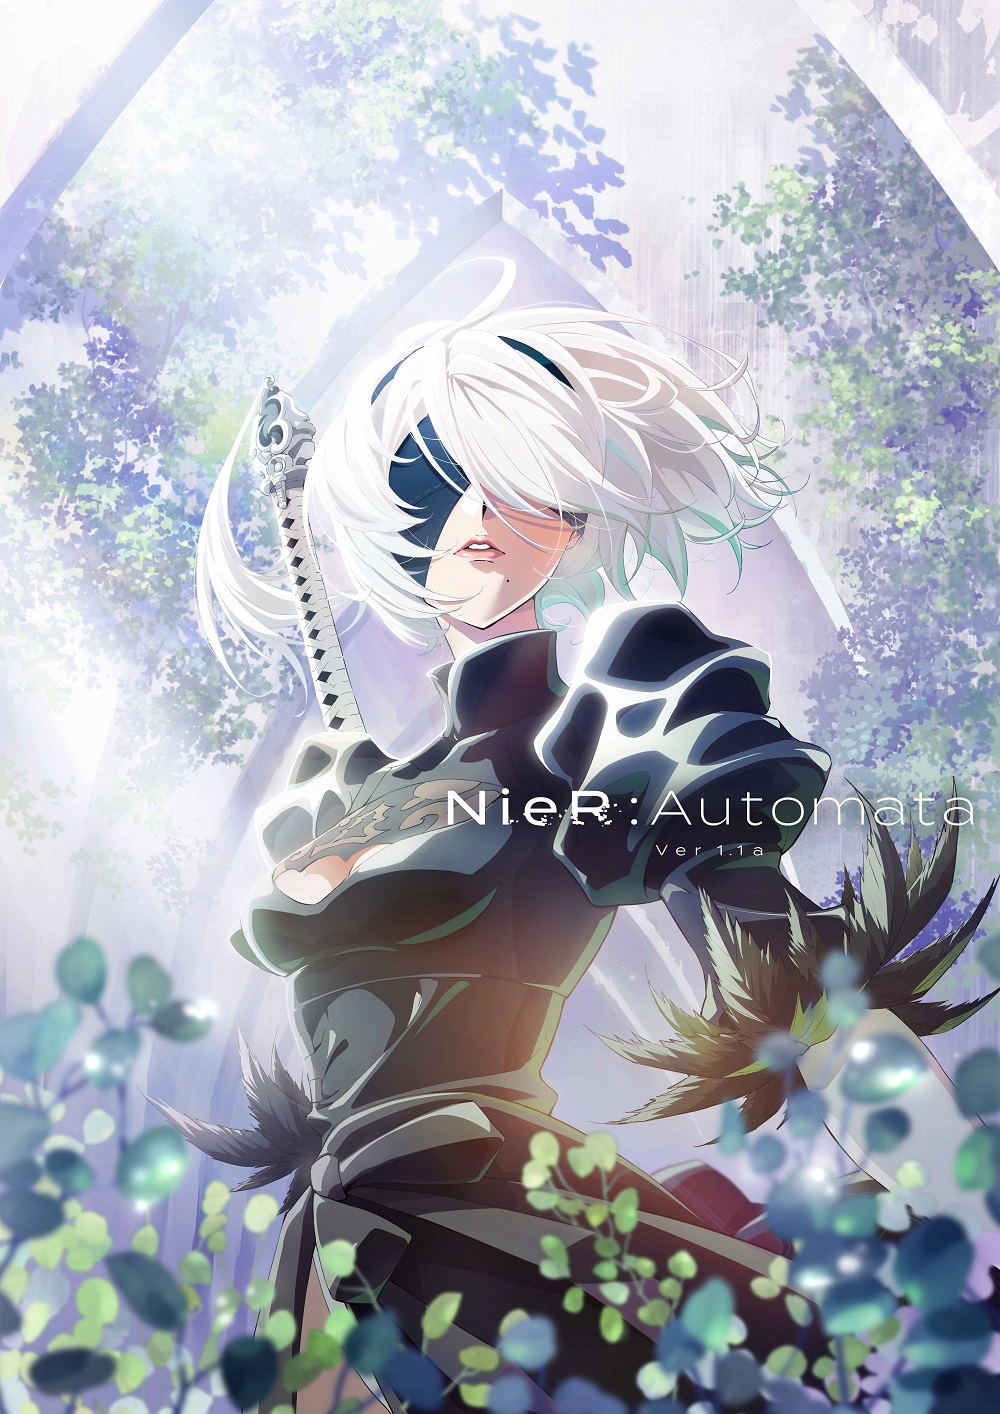 新曲 アンチノミー が アニメ Nier Automata Ver1 1a のエンディングテーマに決定 Amazarashi Official Site Apologies